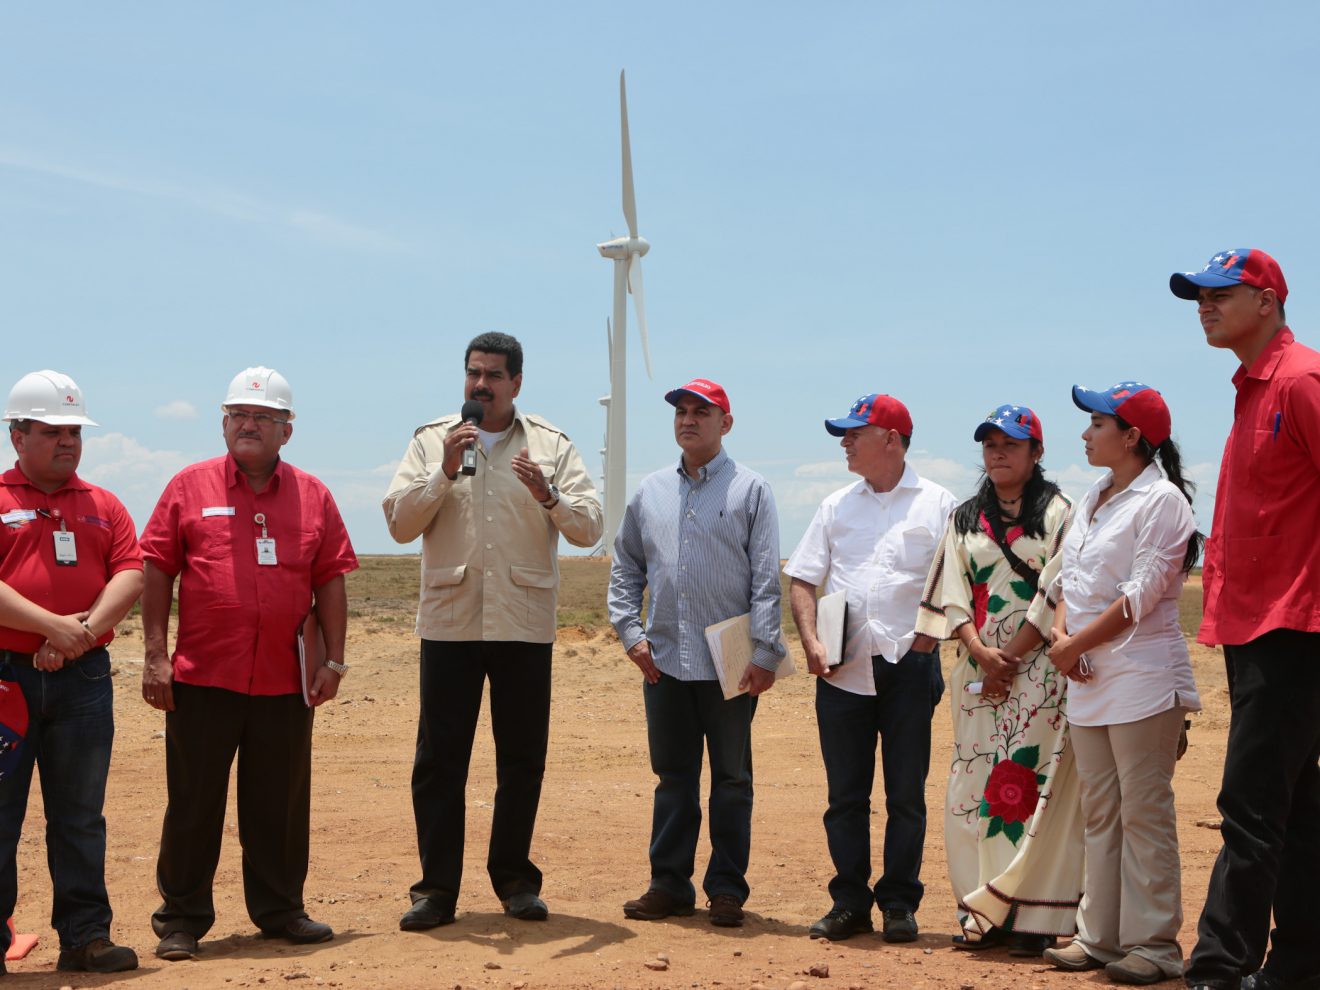 <p>El presidente venezolano Nicolás Maduro en el parque eólico La Guajira en el estado Zulia en 2013. (Imagen: <a href="http://www.minci.gob.ve/presidente-maduro-visito-parque-eolico-la-guajira/">Ministerio de Comunicación de Venezuela)</a></p>